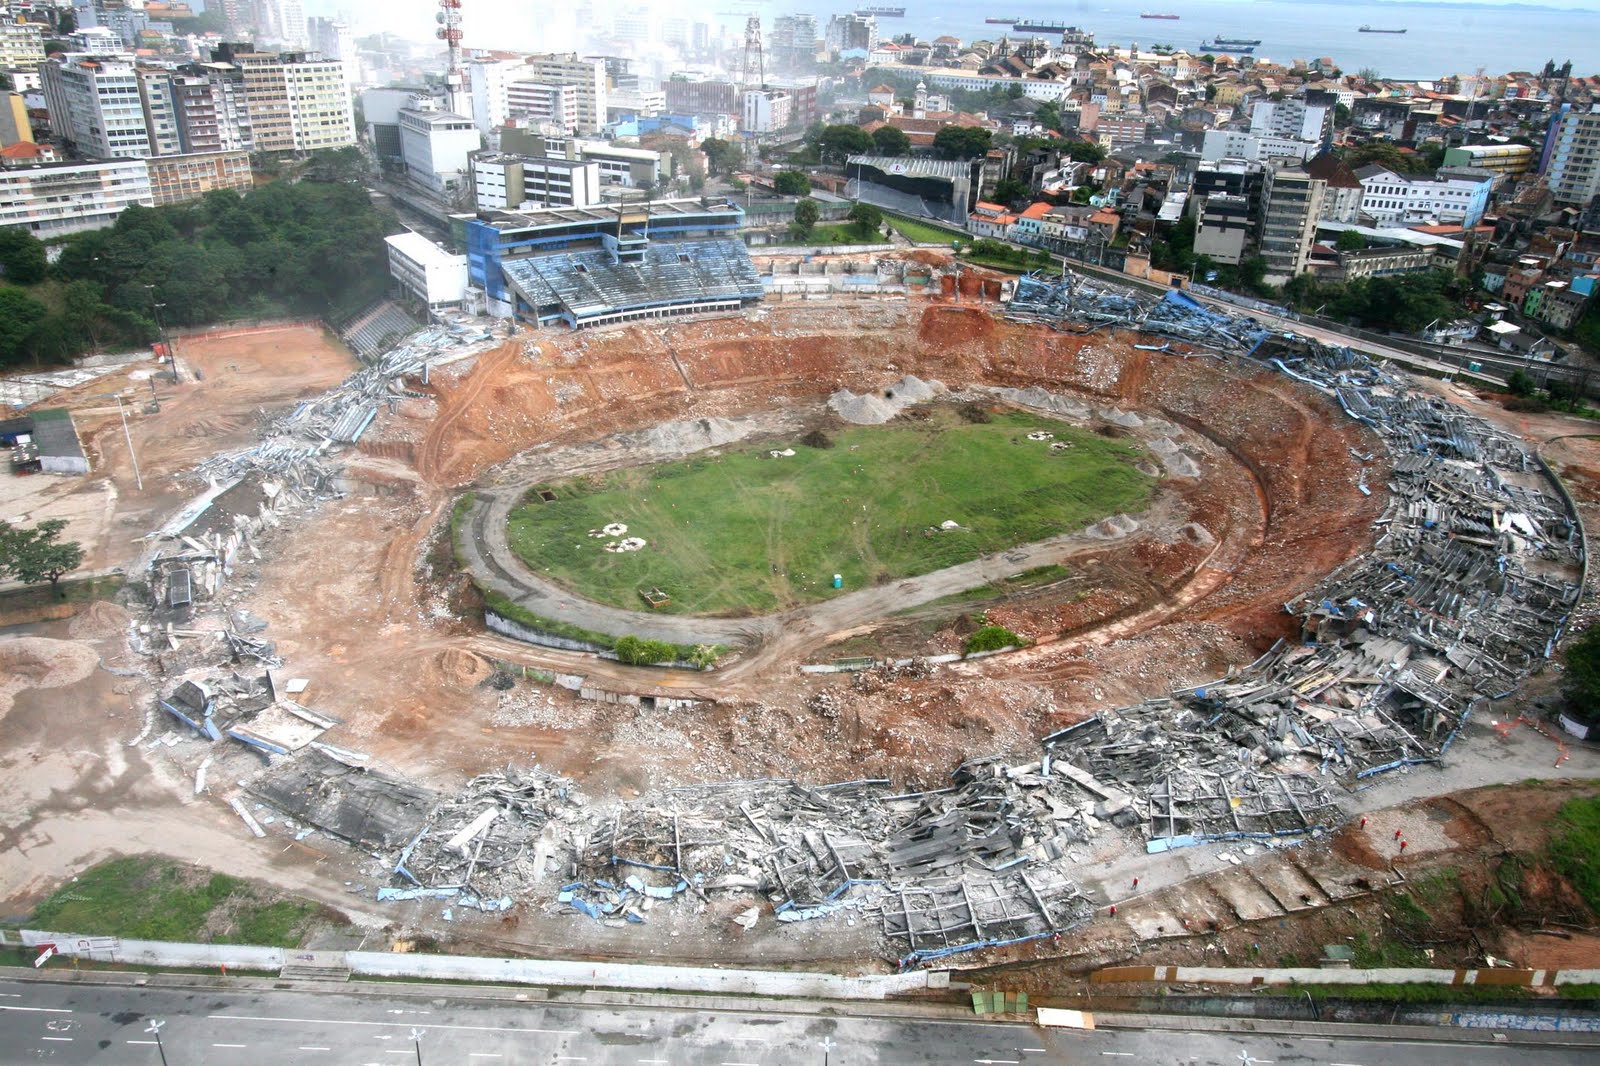 Estádio Octávio Mangabeira – Wikipédia, a enciclopédia livre